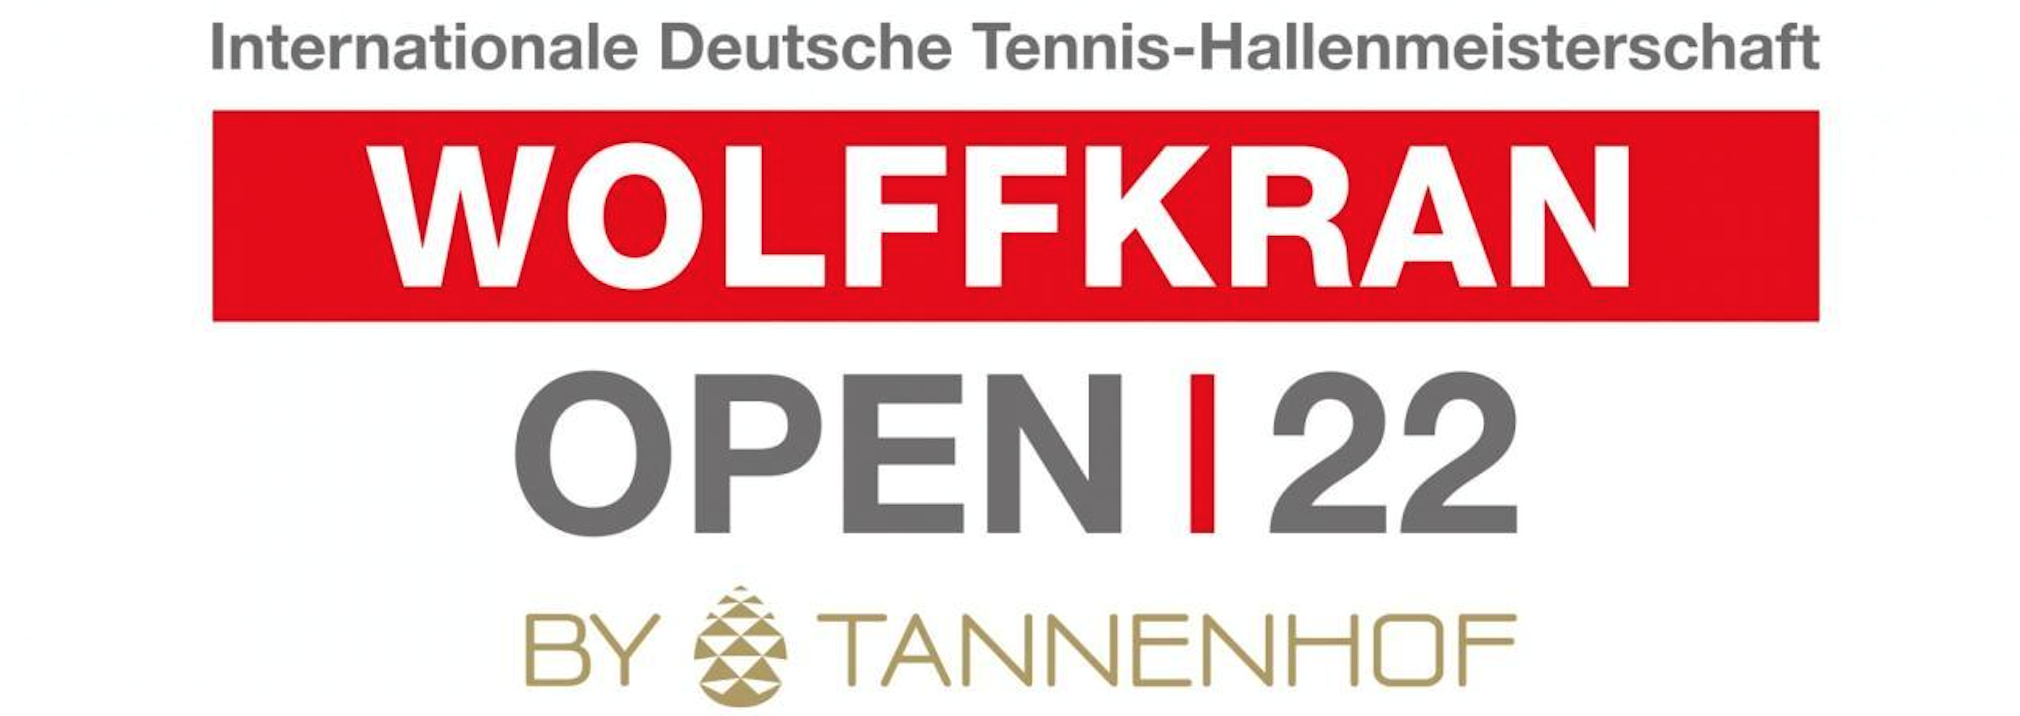 Wolffkran Open